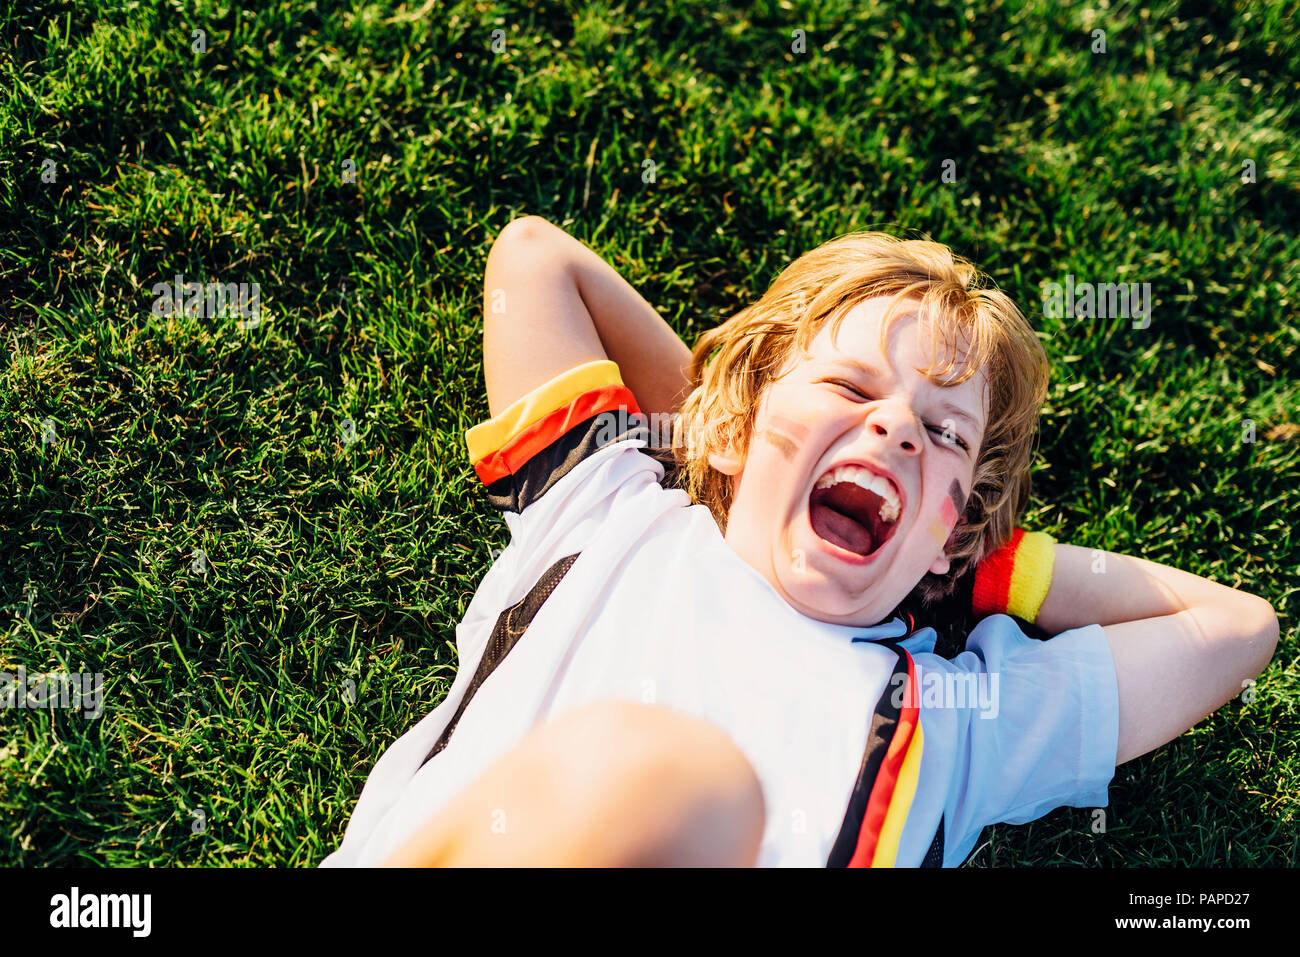 Junge im deutschen Fussball shirt liegen auf Gras, laughimg Stockfoto